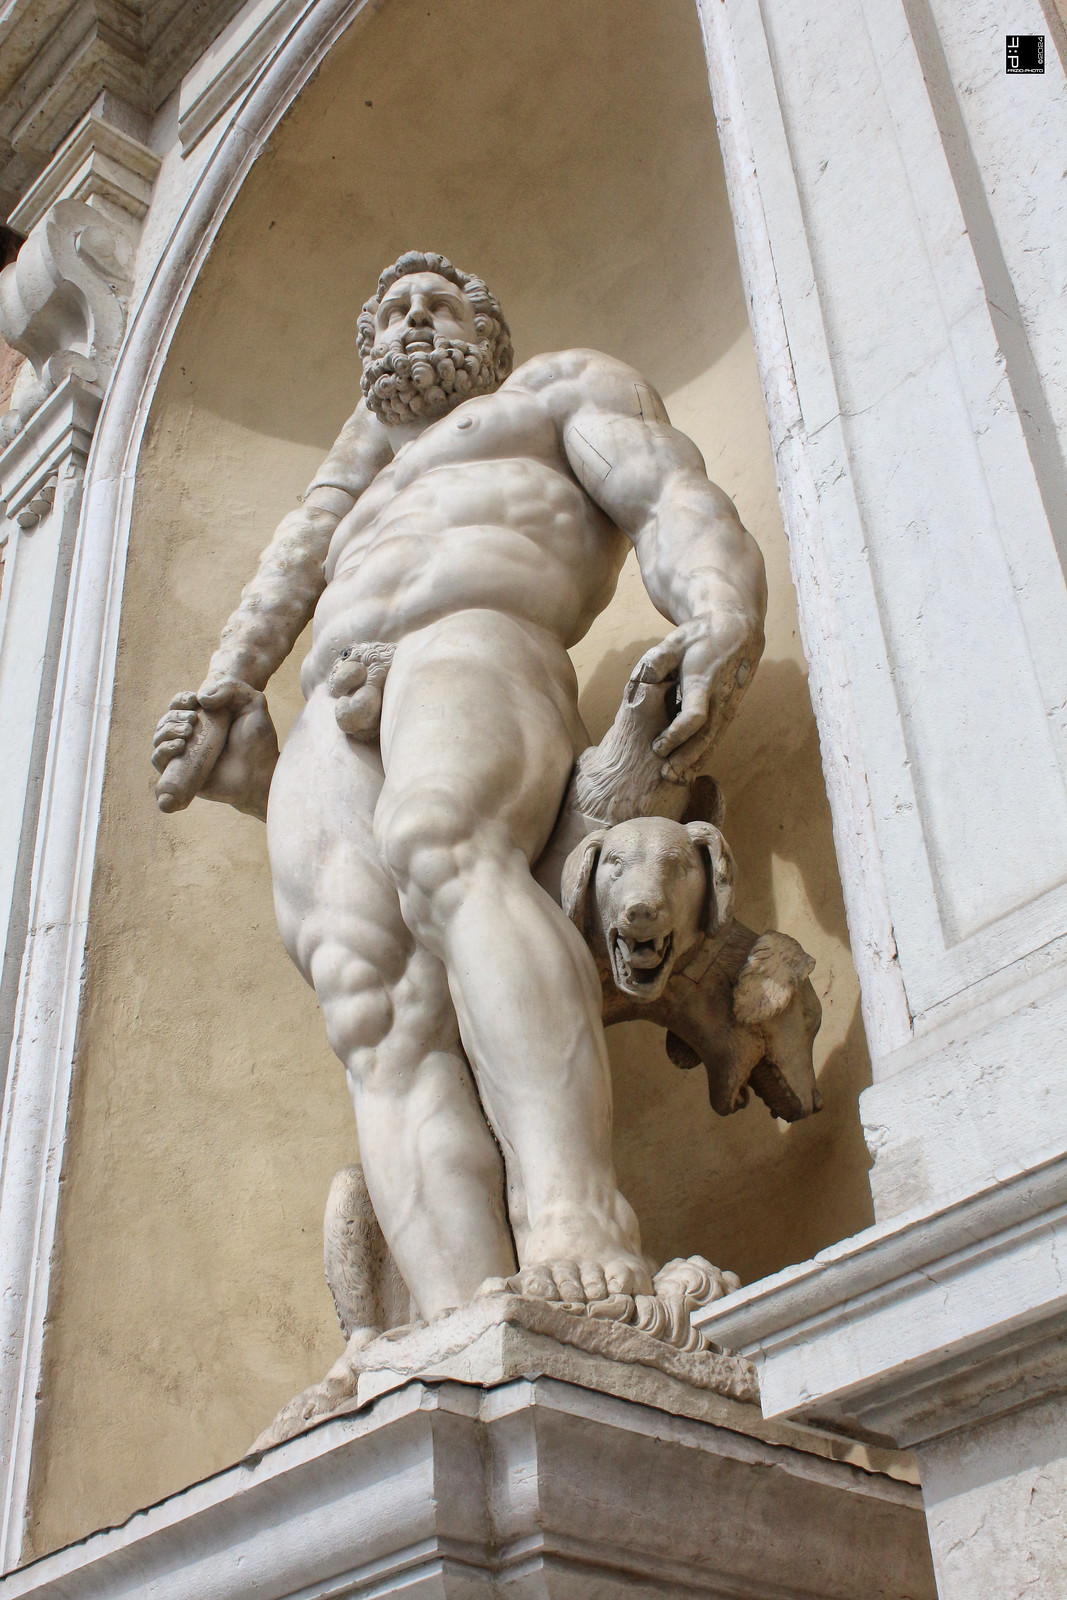 #a0739 Modena, statue ingresso Accademia Militare, ex Palazzo Ducale - Ercole